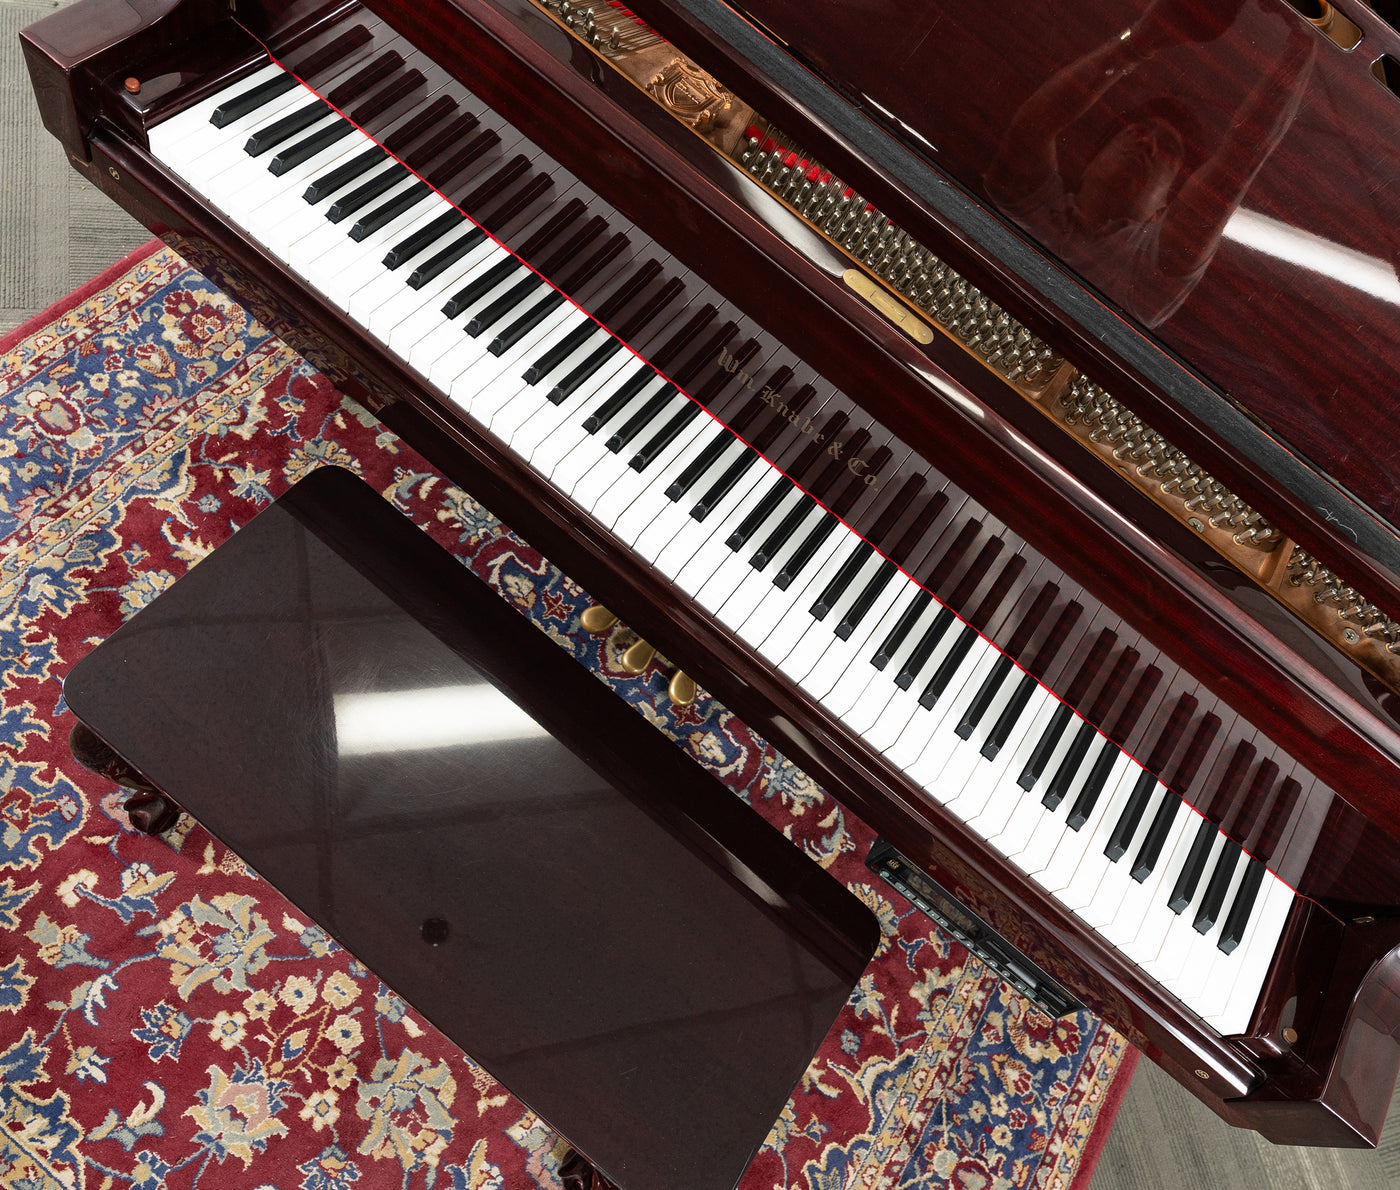 Knabe KN-520 Grand Piano | Polished Mahogany | SN: G124898 | Used